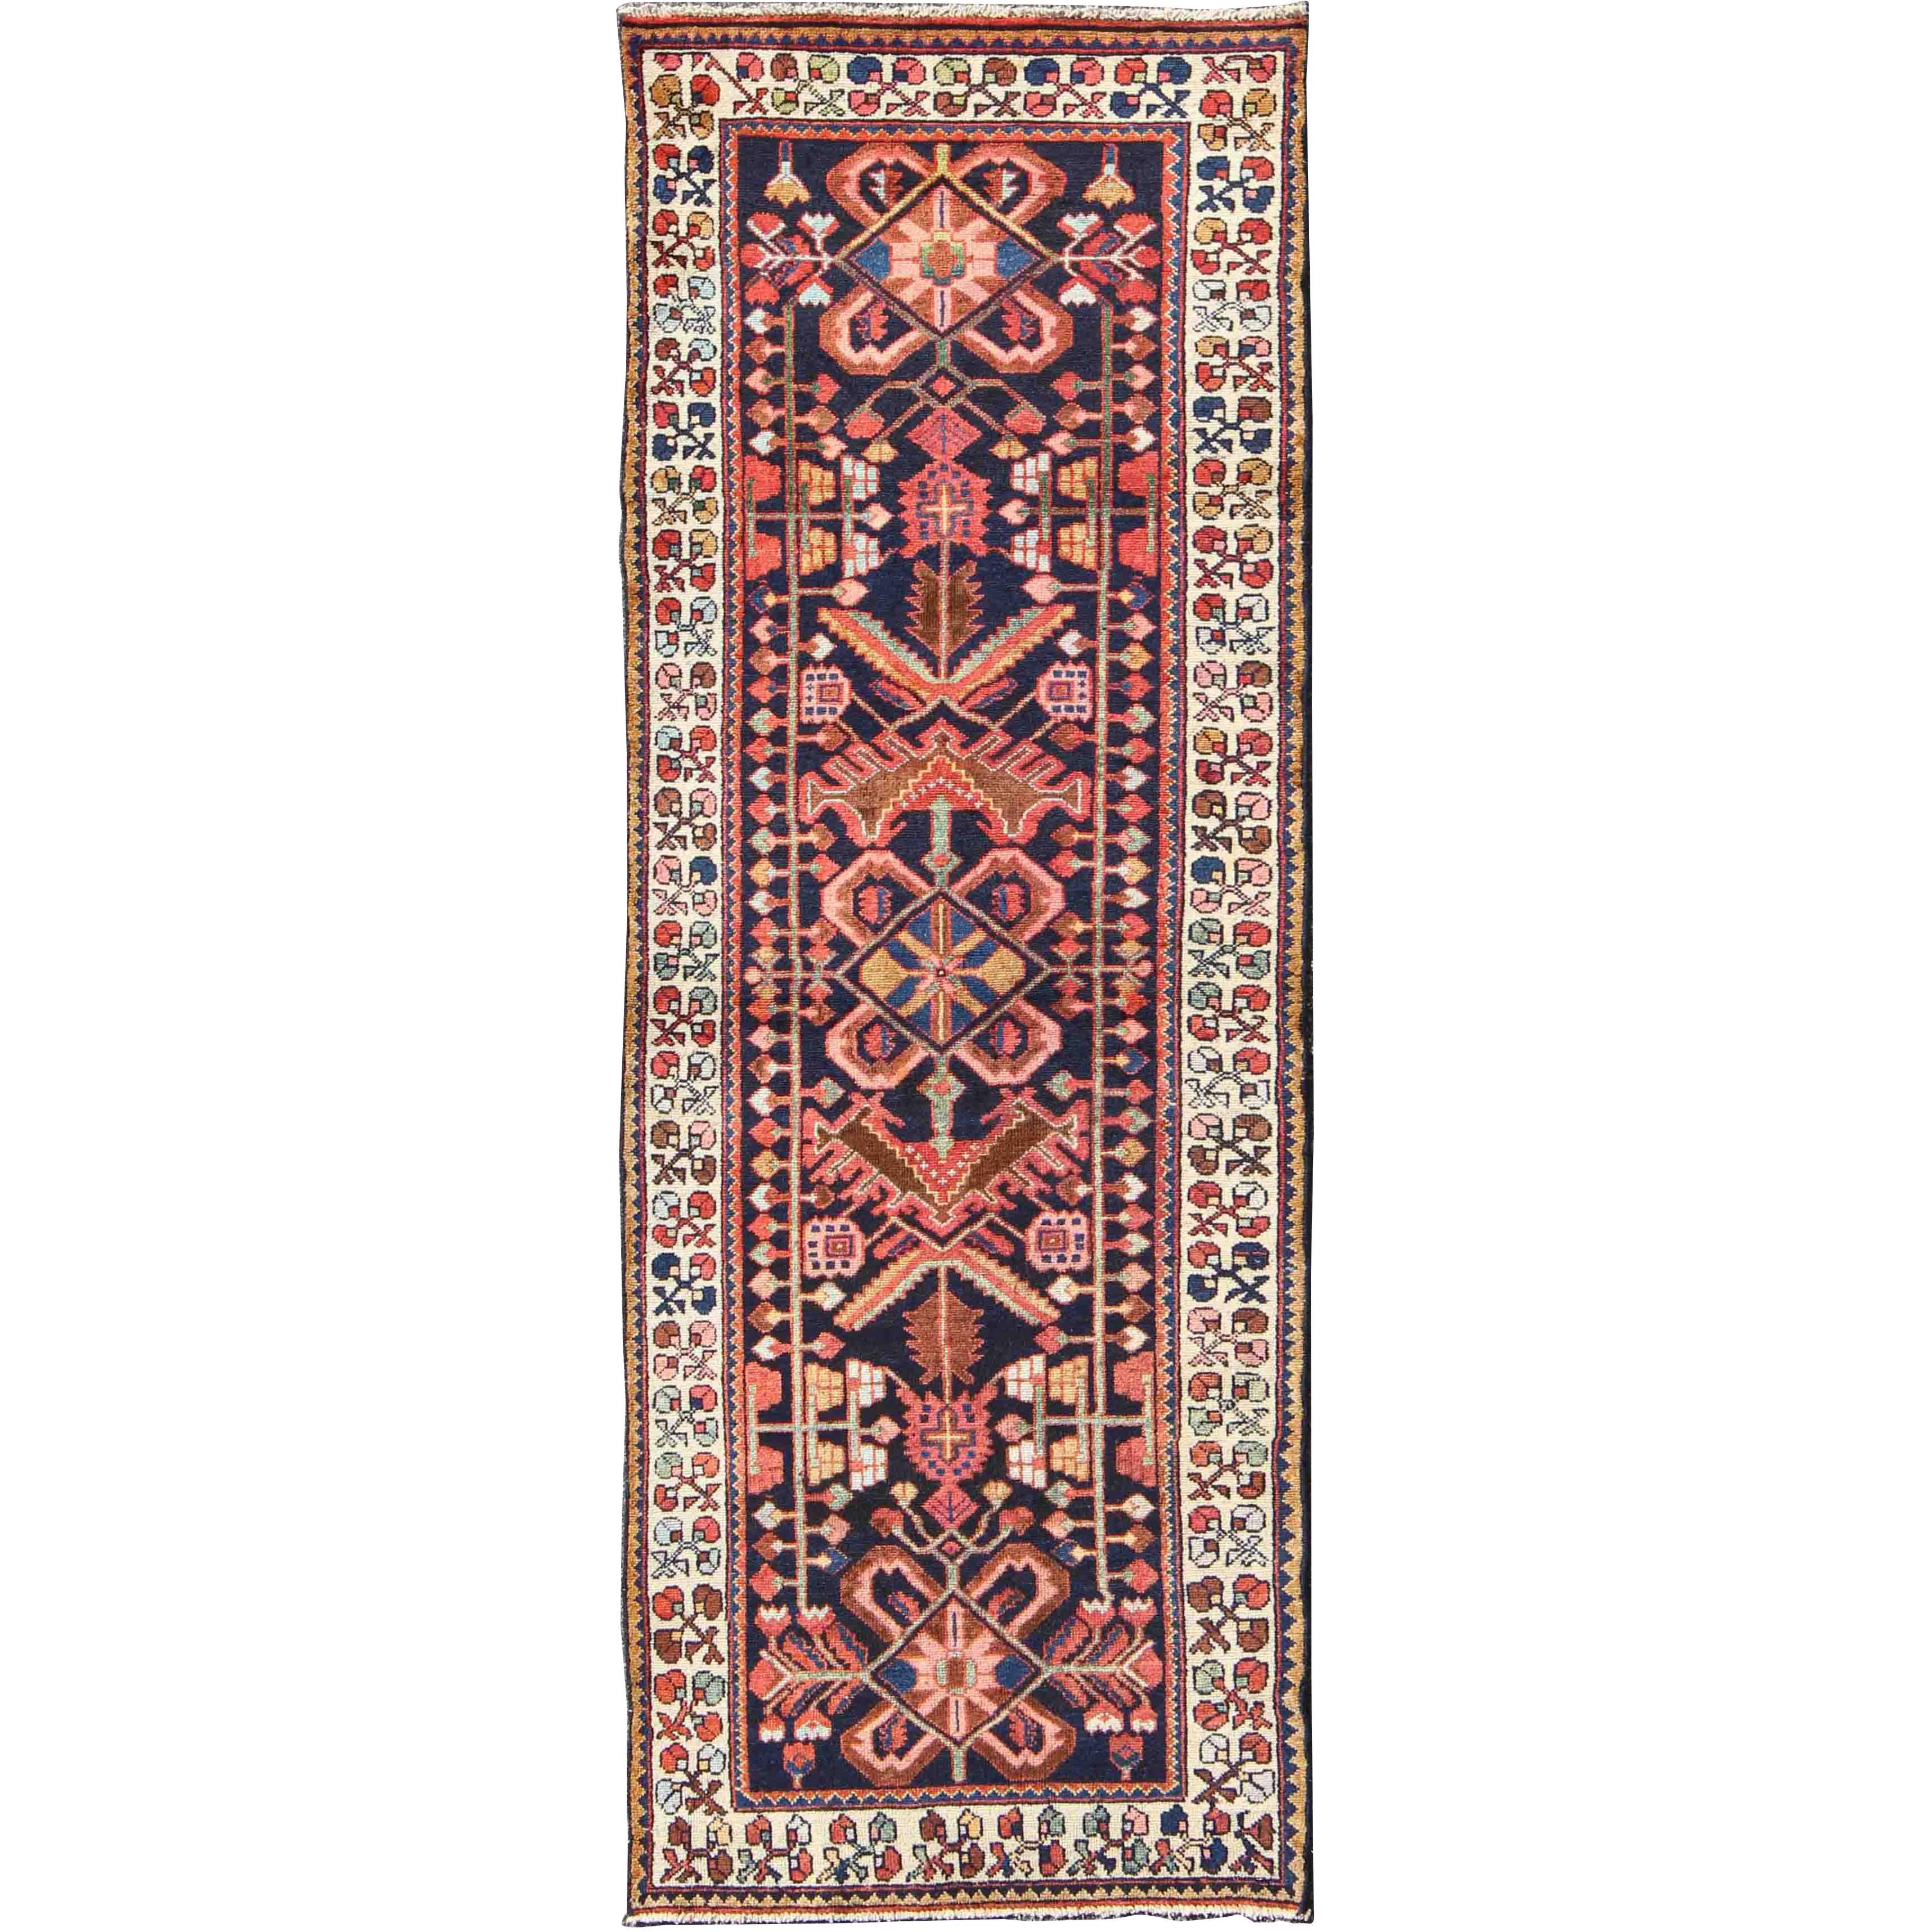 Persischer Hamedan-Teppich aus der Mitte des Jahrhunderts in Mitte des Jahrhunderts in Mitternachtsblau, Rot, Grün und Braun, Stammeskunst